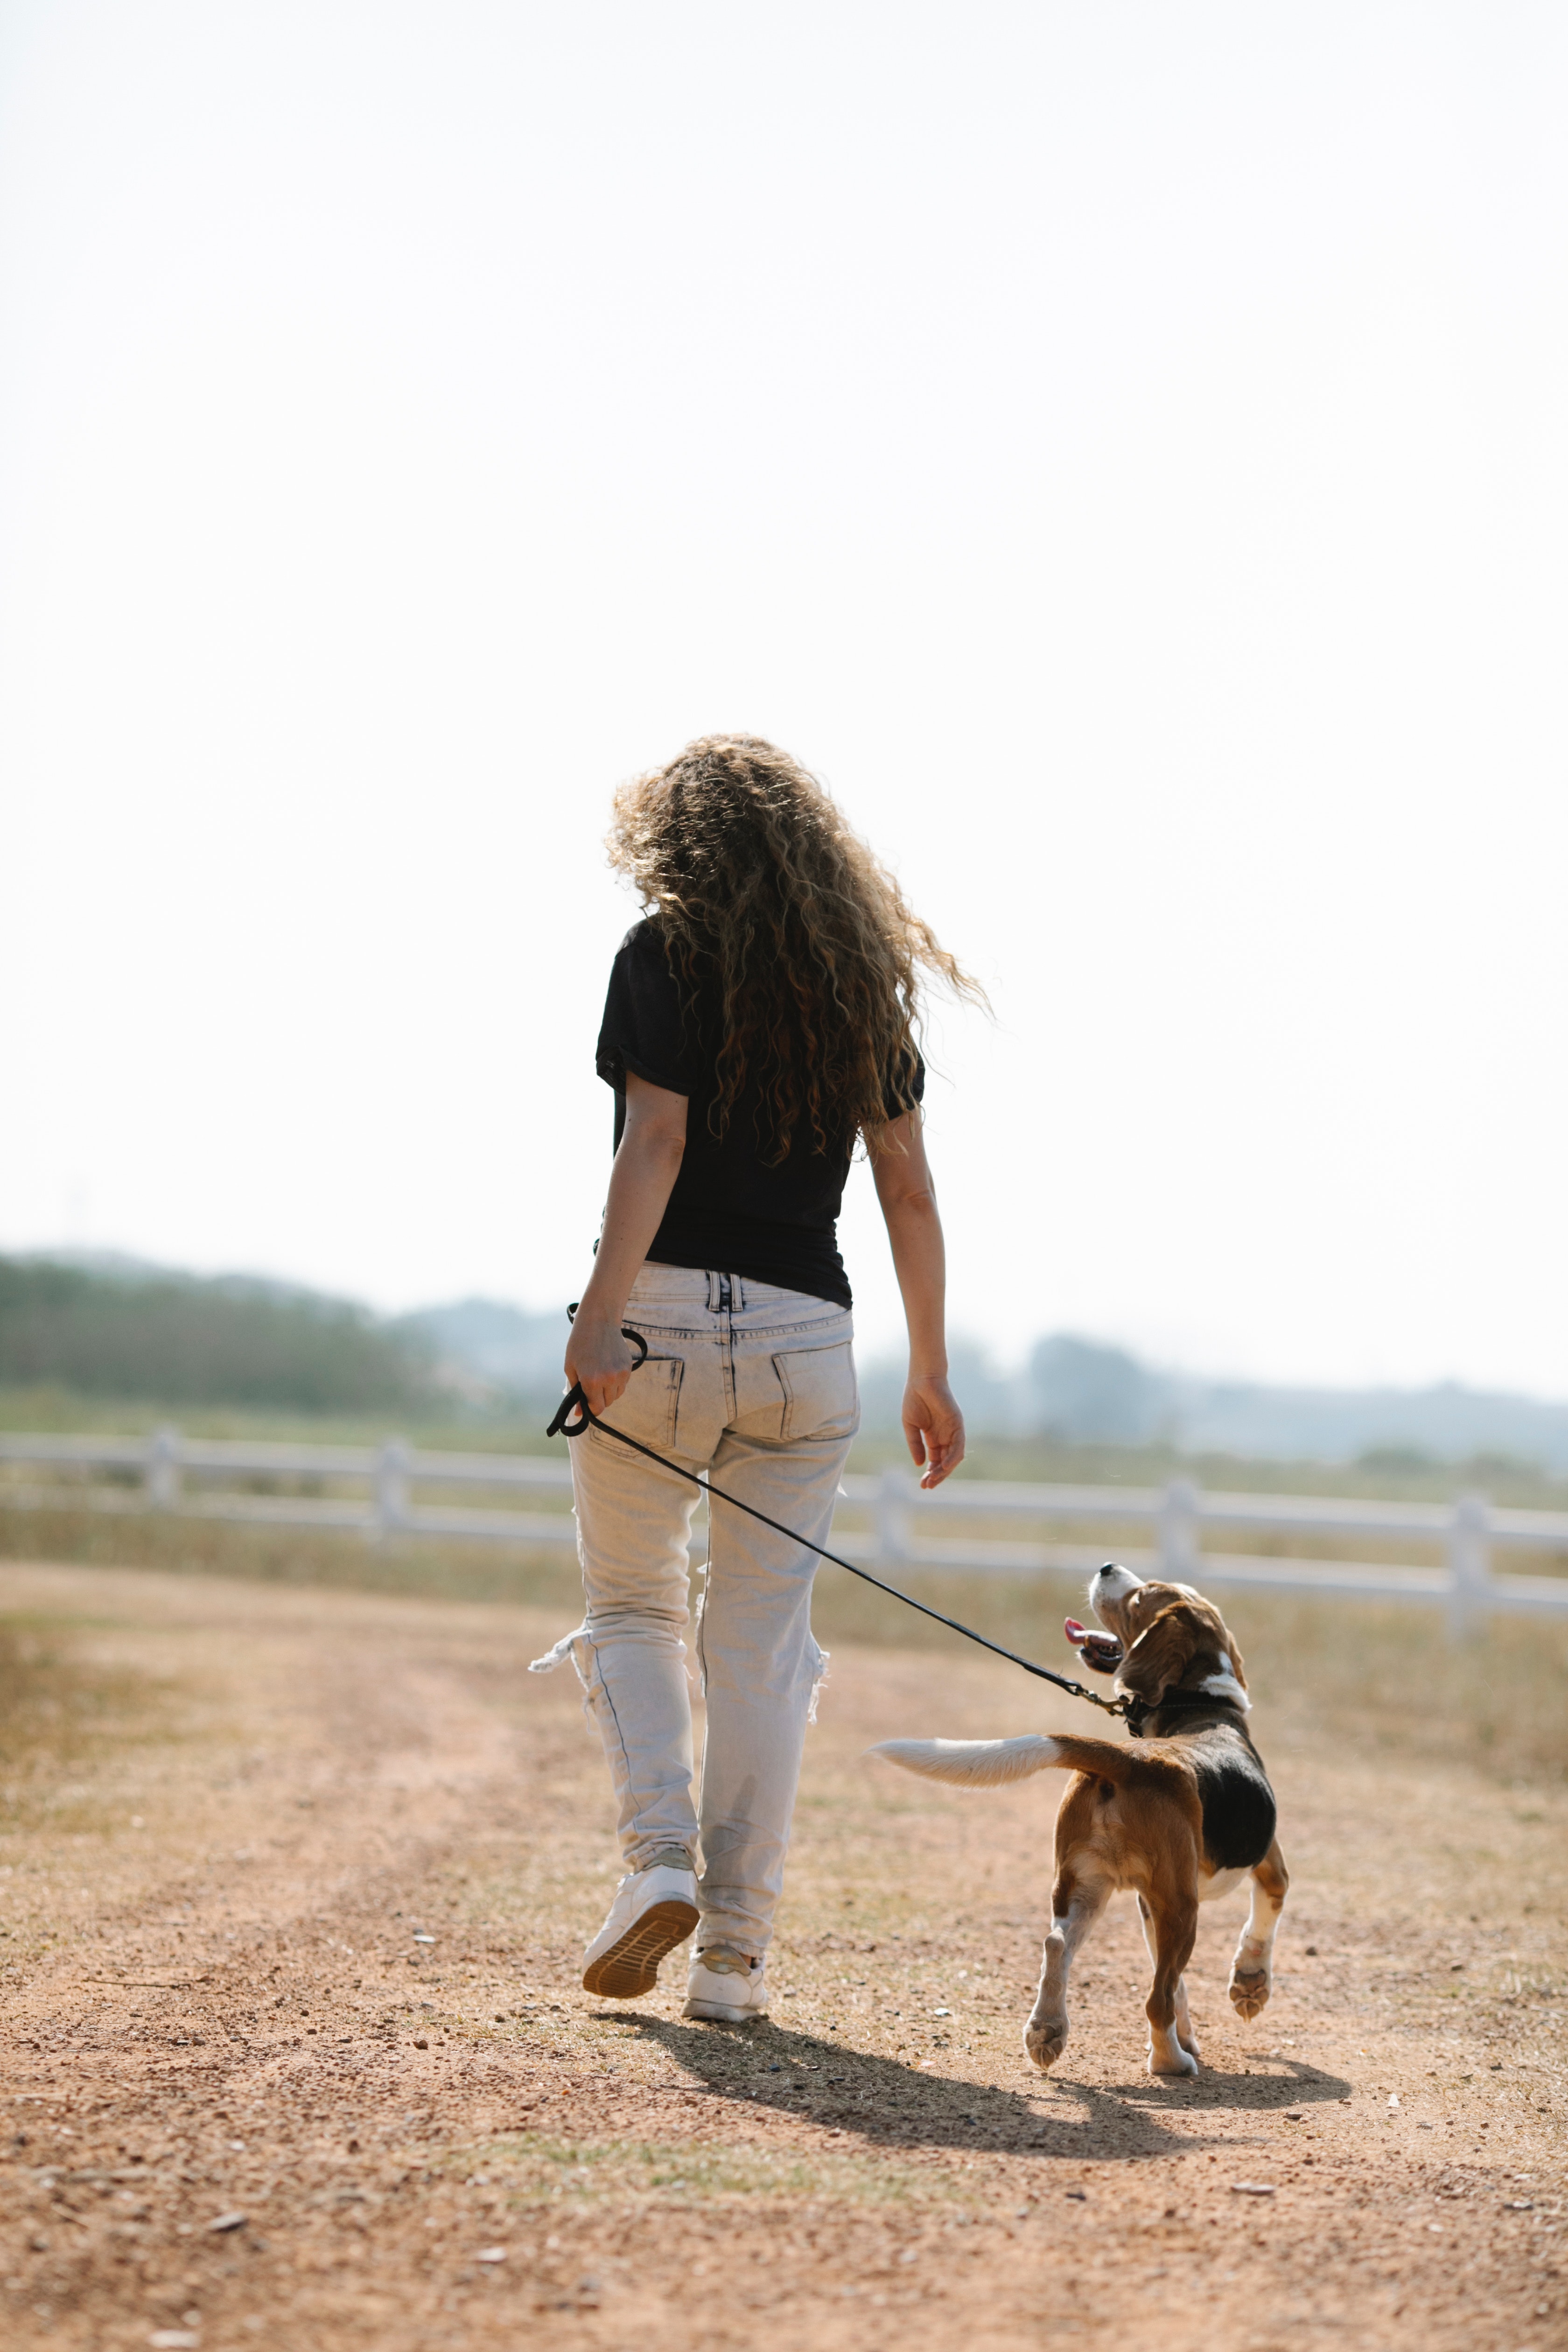 γυναικα που περπαταει με τον σκυλο της